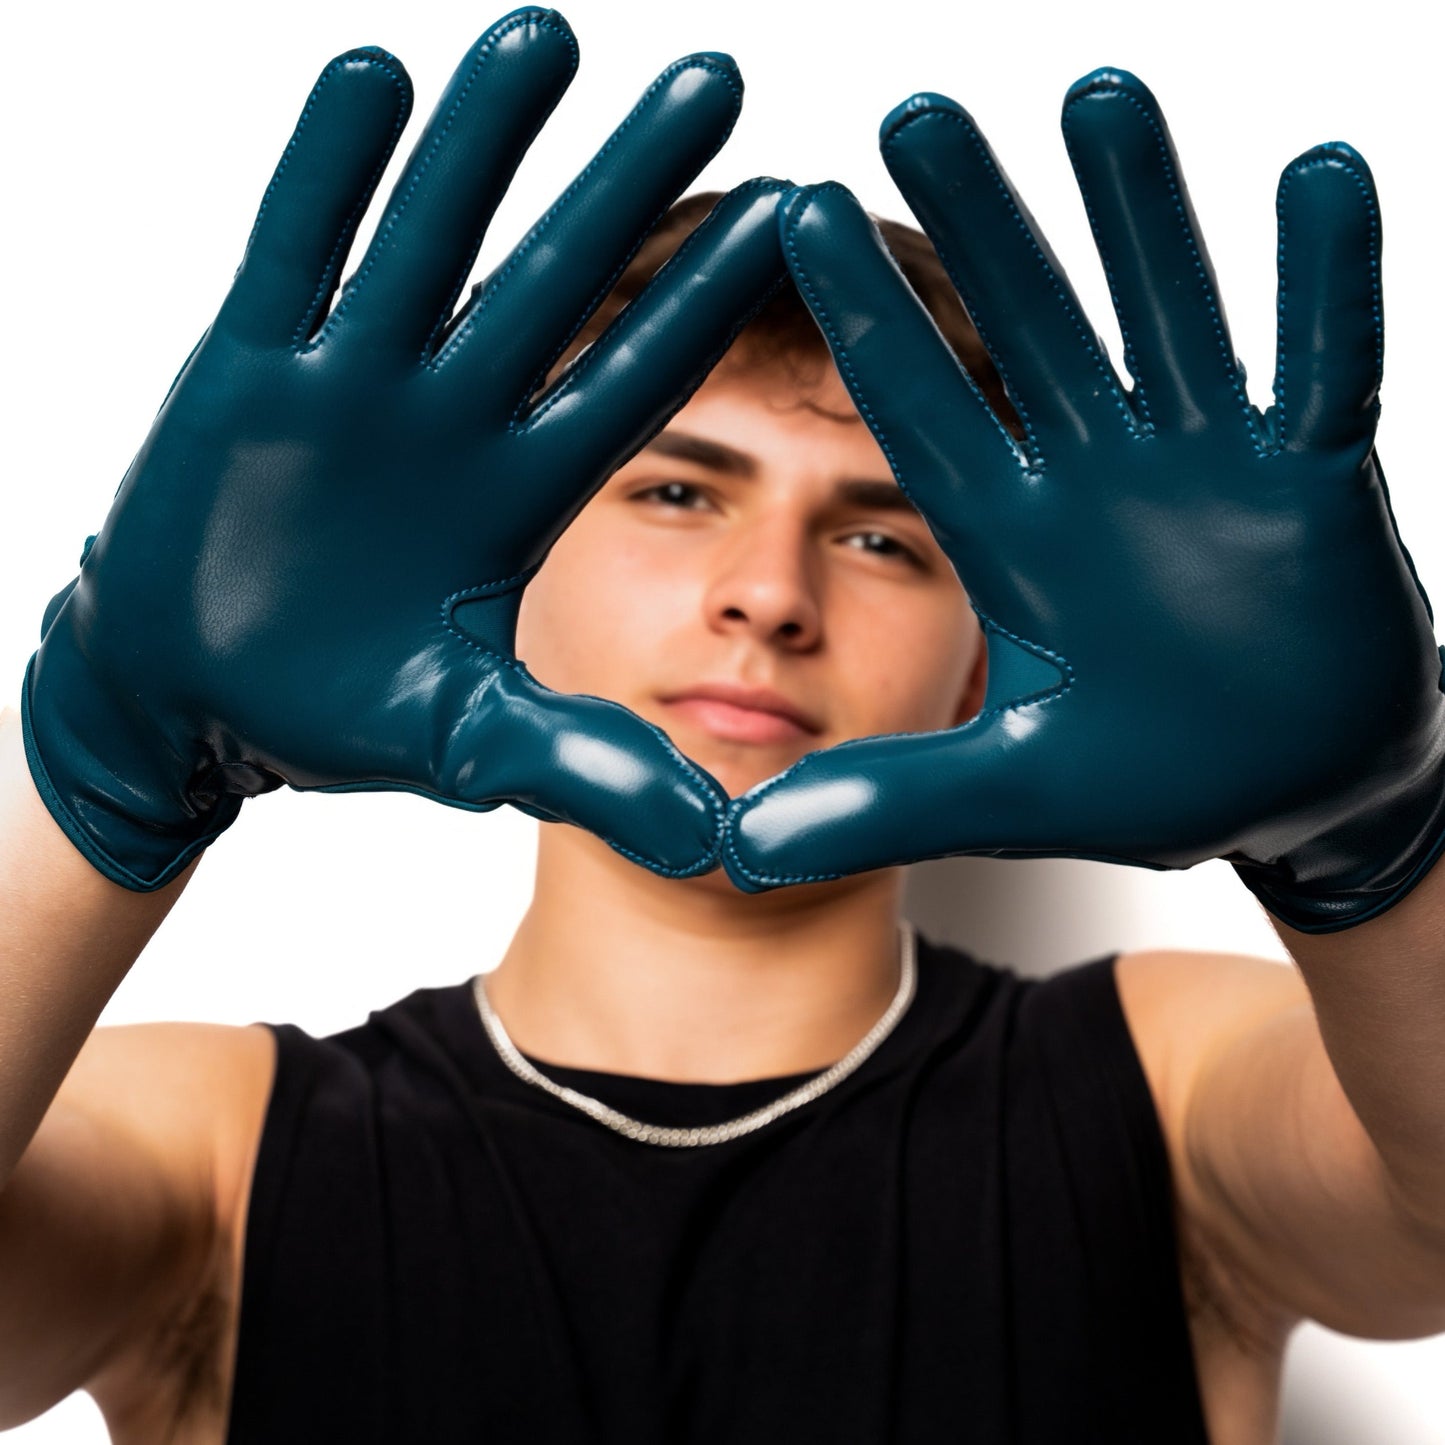 Echo Blue ALLSZN Receiver Gloves